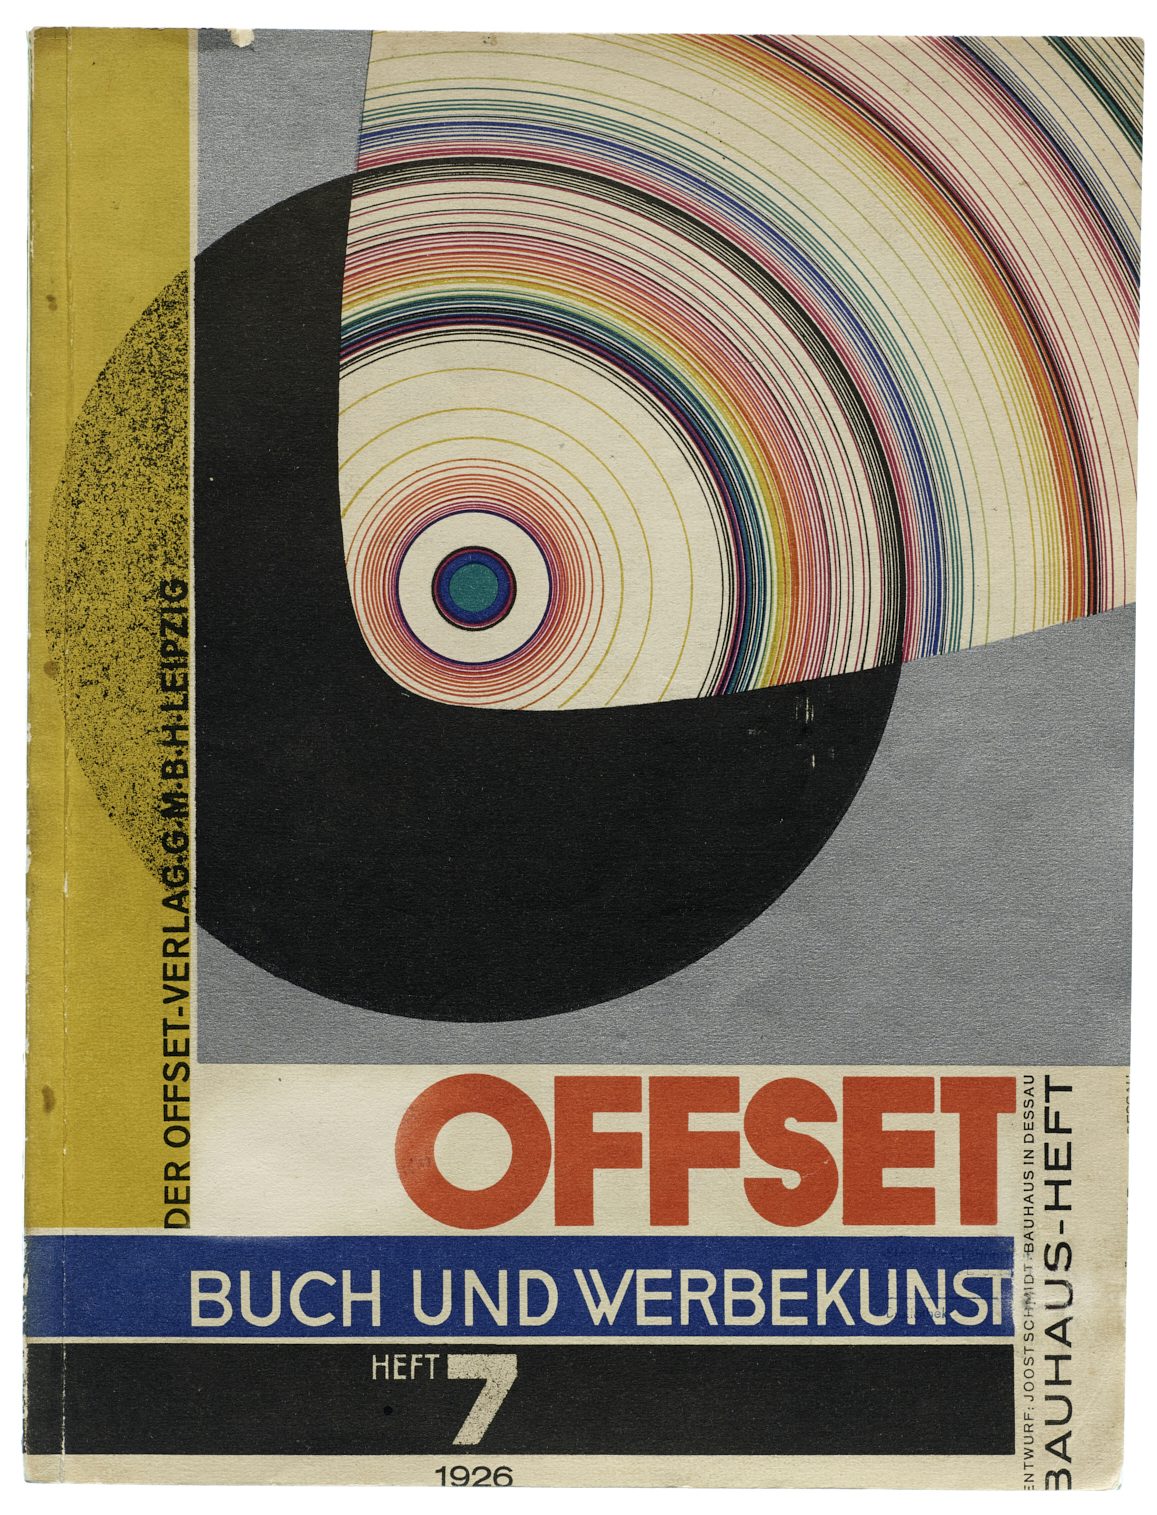 Bauhaus Exhibition Weimar I, 1923 print by Joost Schmidt